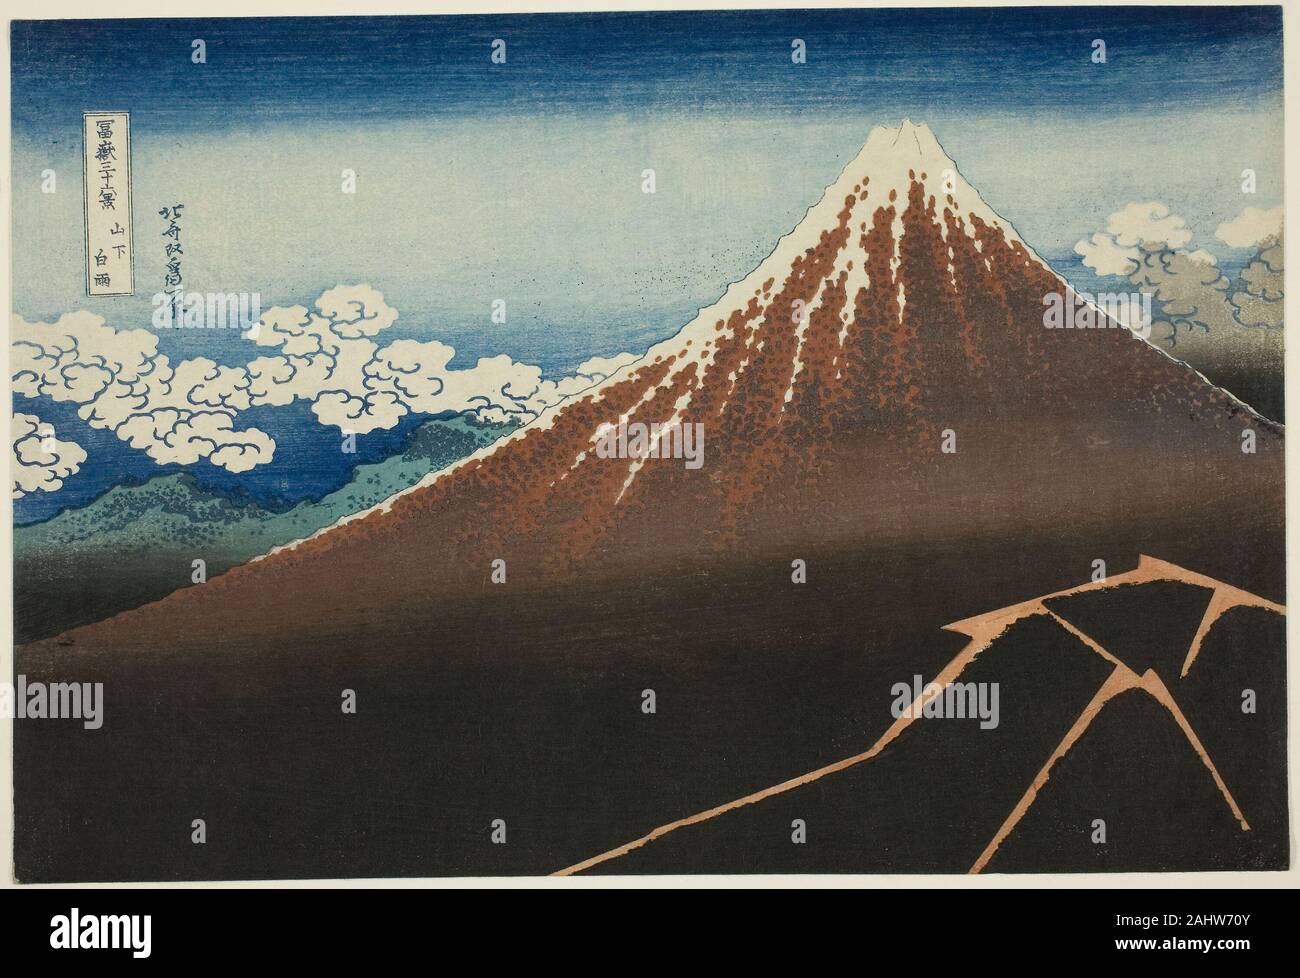 Katsushika Hokusai. Dusche unter dem Gipfel (Sanka hakuu), aus der Serie 36 Ansichten des Berges Fuji (Fugaku sanjurokkei). 1825 - 1838. Japan. Farbe holzschnitt, oban Katsushika Hokusai (1760-1849) gilt als einer der größten Künstler in der japanischen Geschichte, und einer der großen Meister des japanischen Holzschnitts. Hokusai's bekanntestes Werk ist die Reihe Fugaku sanju - rokkei (36 Blick auf Mount Fuji), zwischen 1830 und 1832, wenn der Künstler war über siebzig Jahre alt erstellt. Diese geniale Serie besteht aus vierzig - sechs Ansichten der bekannten Berg die ext Stockfoto